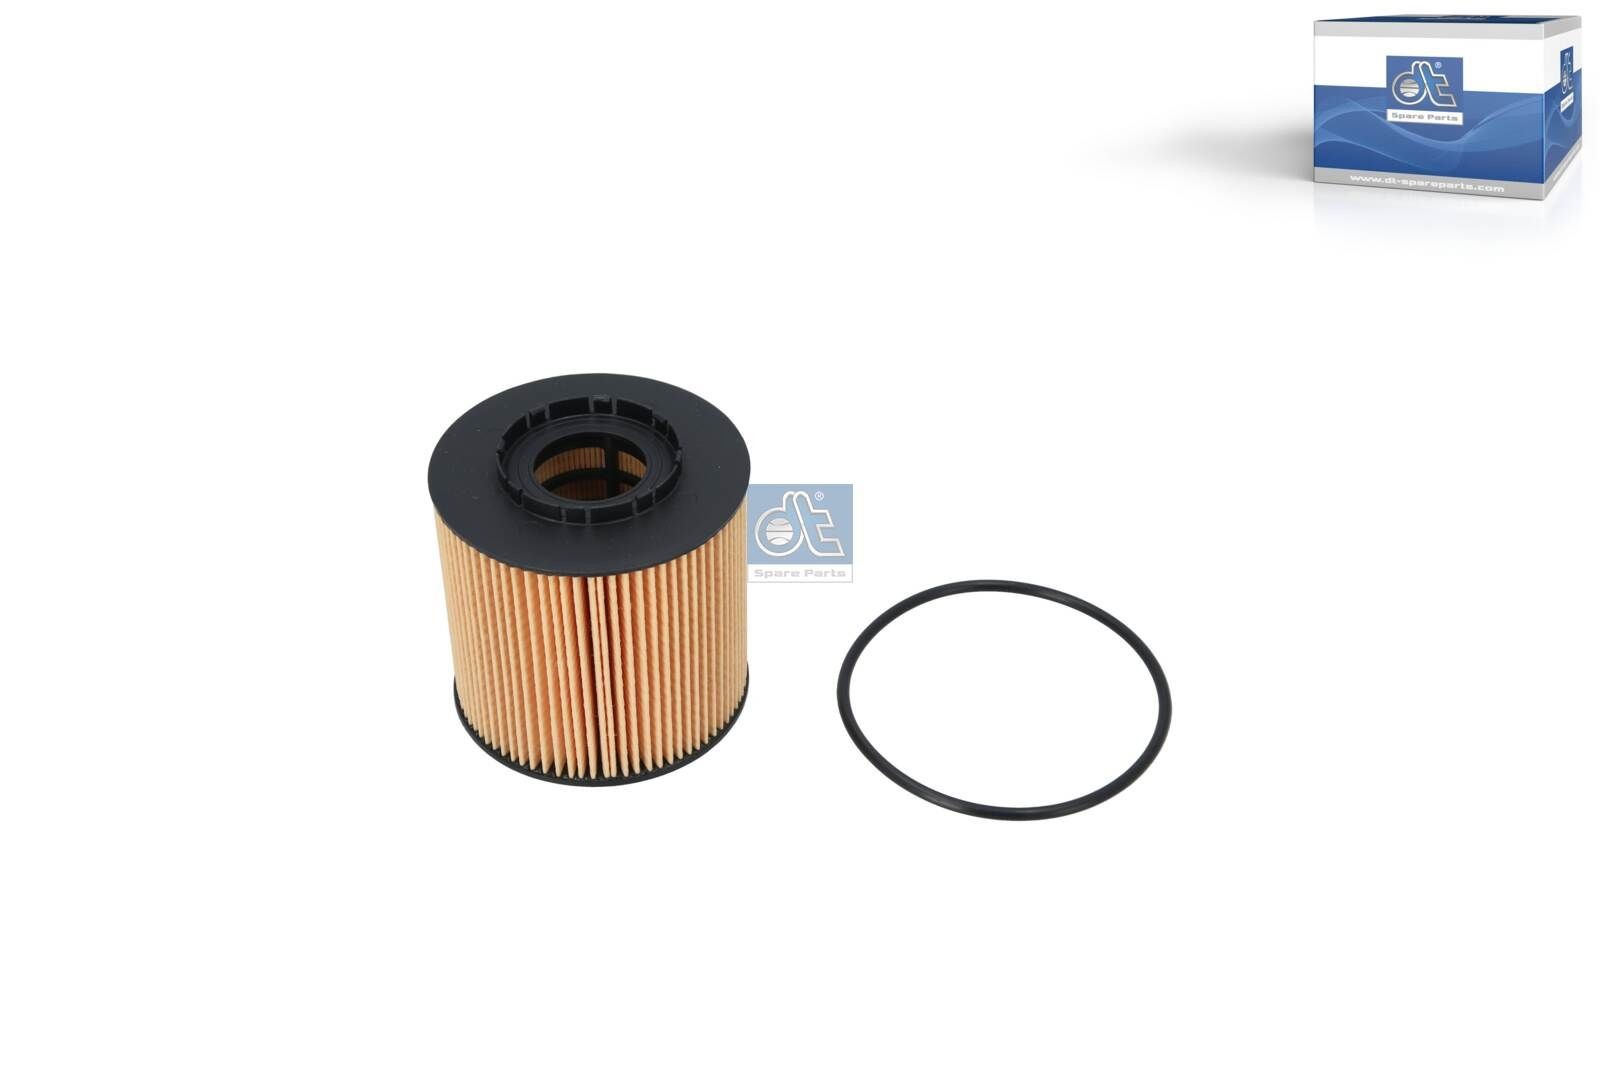 Renault MEGANE Oil filter 9975417 DT Spare Parts 6.24211 online buy